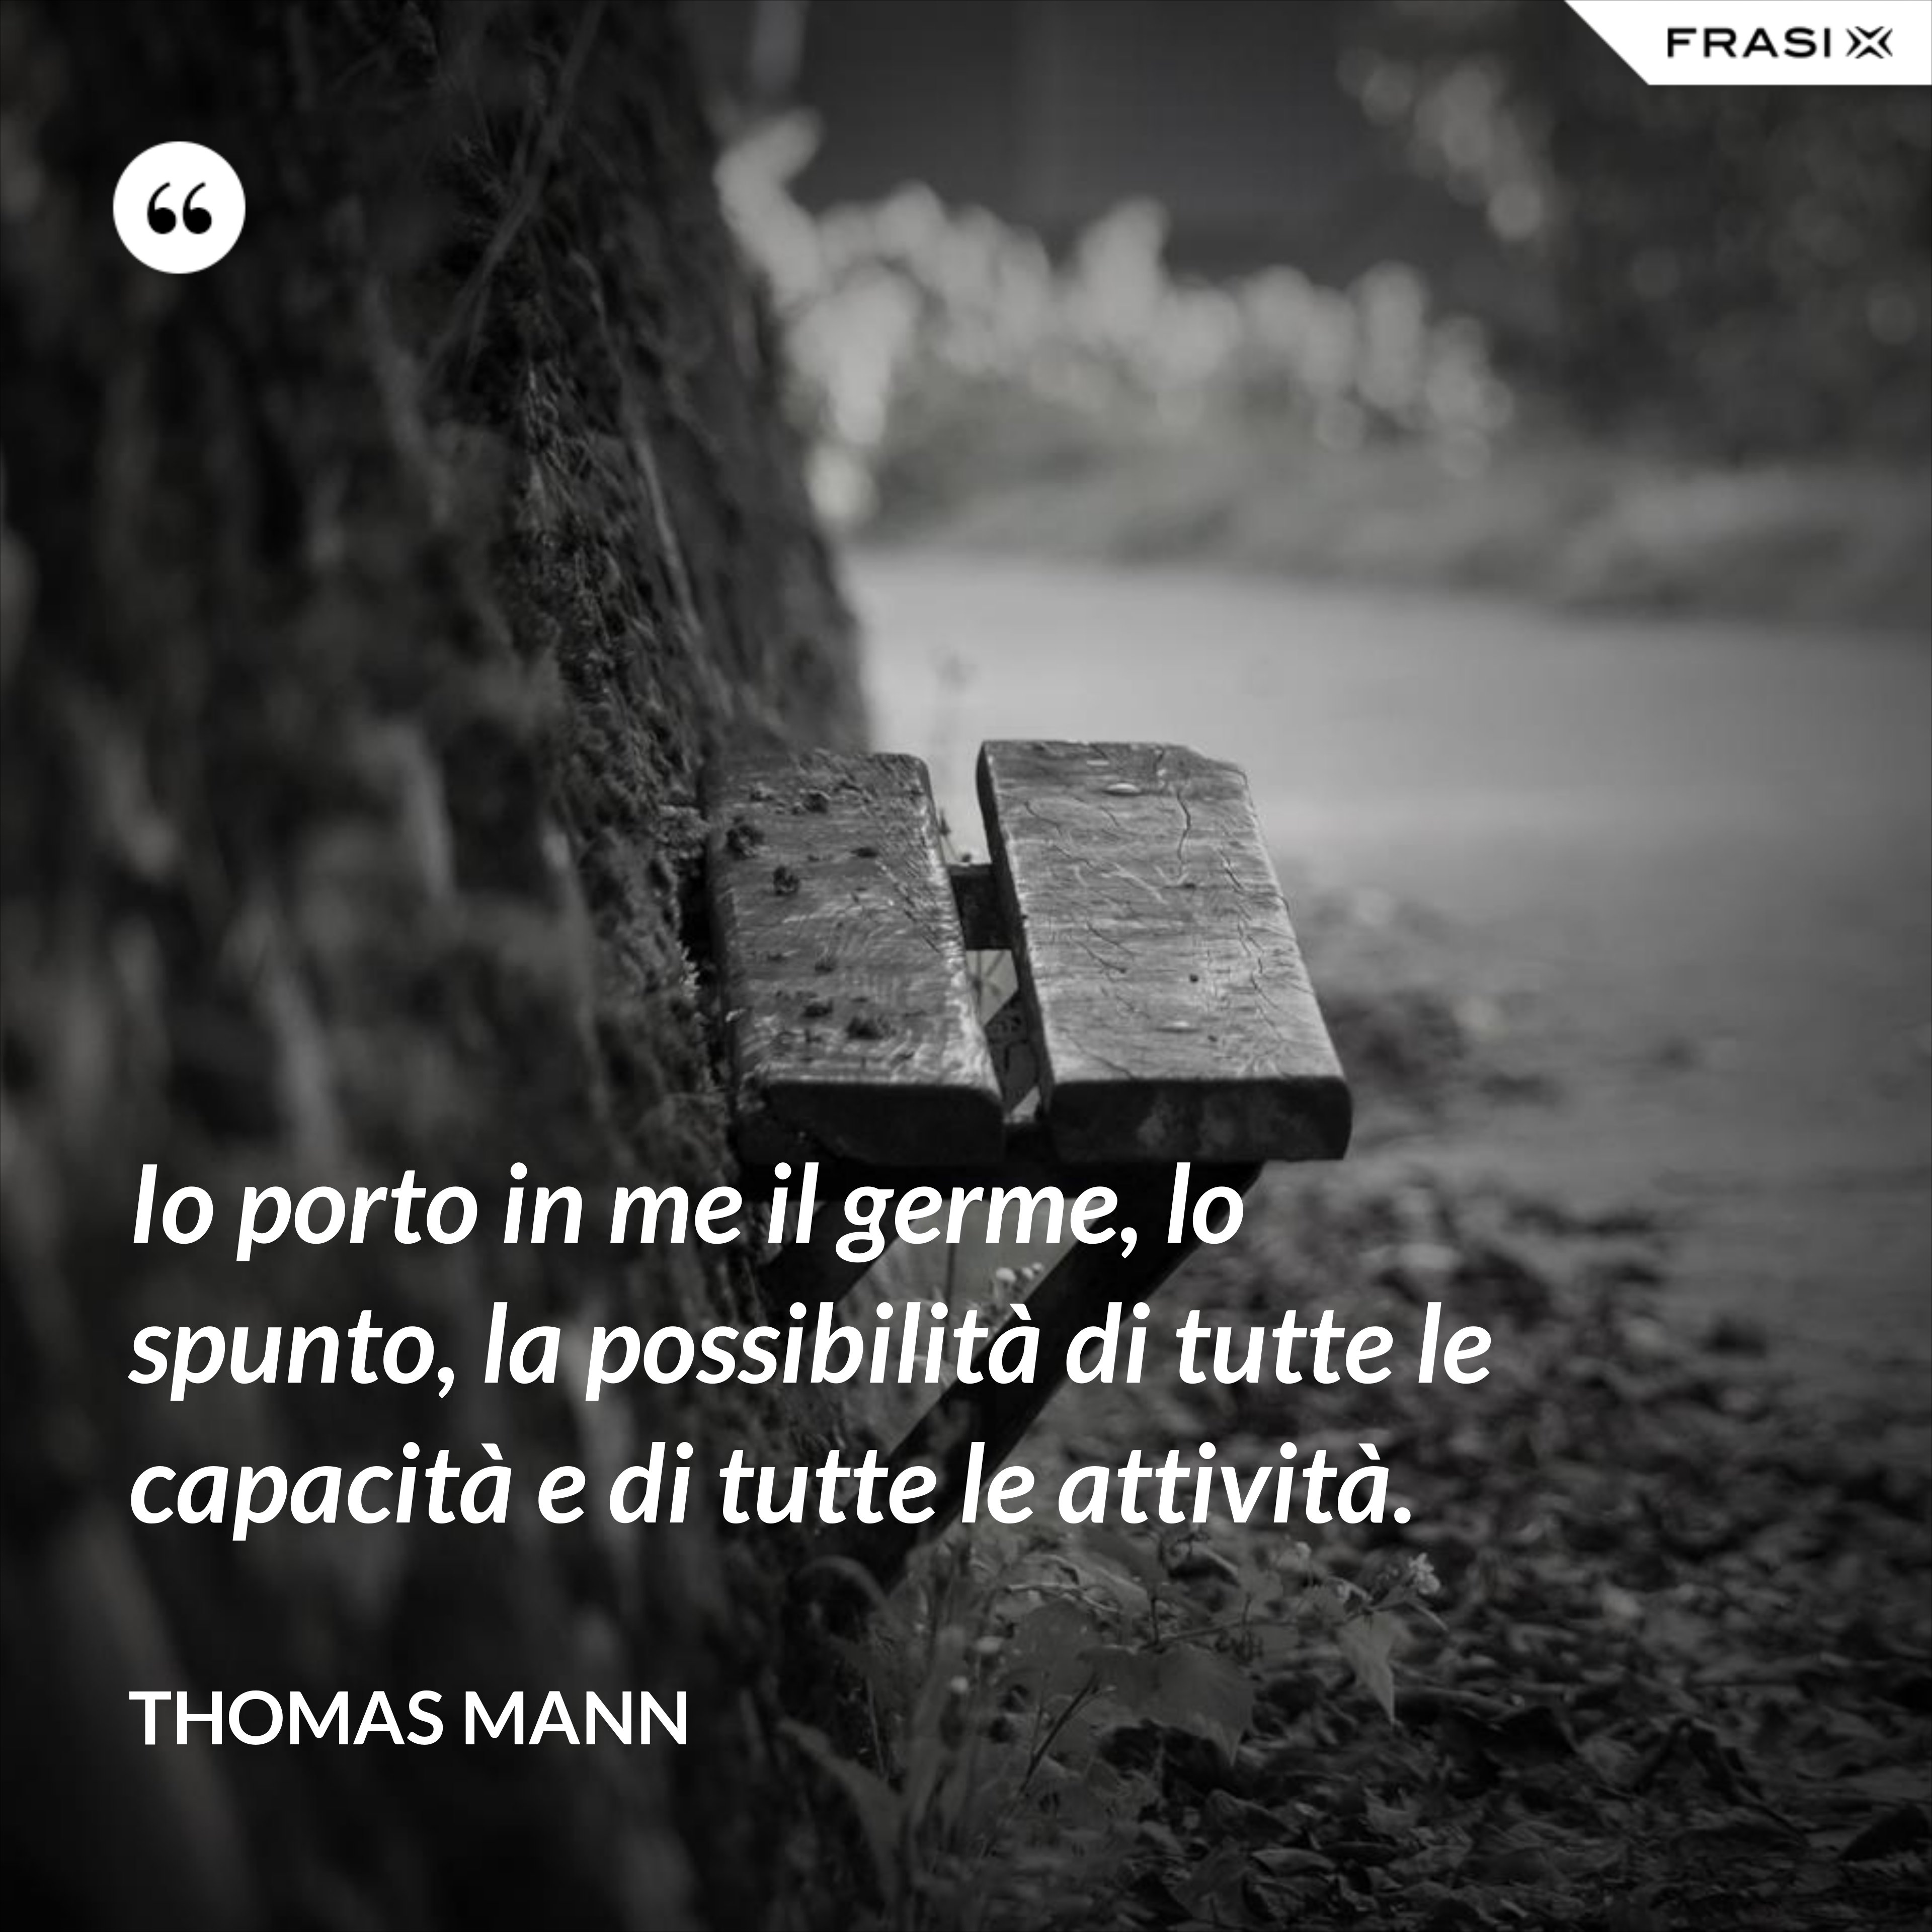 Io porto in me il germe, lo spunto, la possibilità di tutte le capacità e di tutte le attività. - Thomas Mann